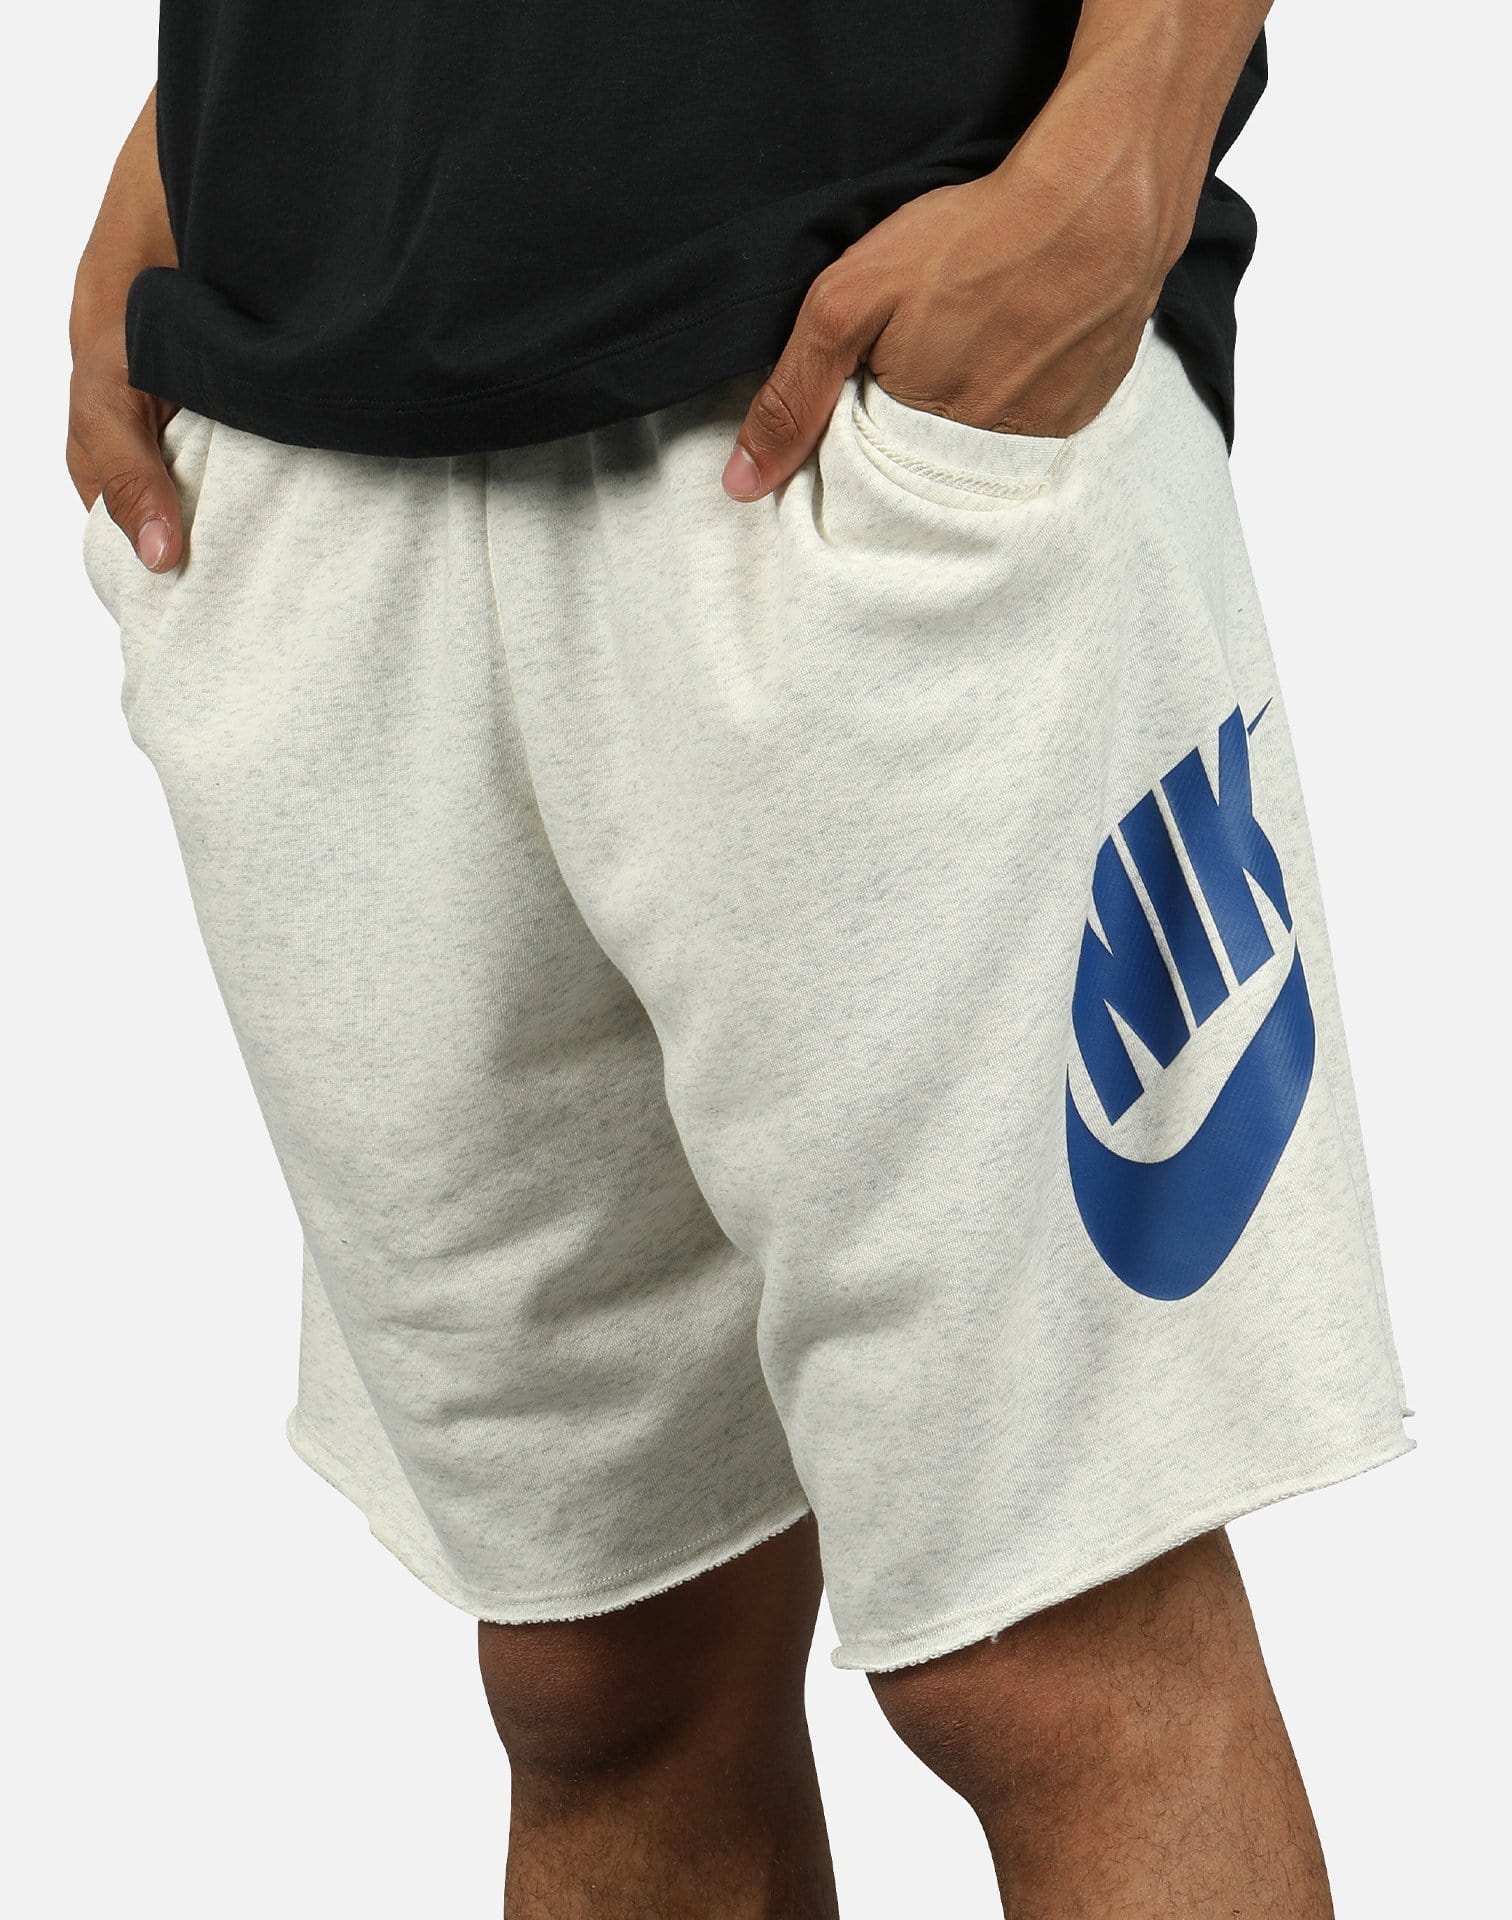 nsw alumni shorts